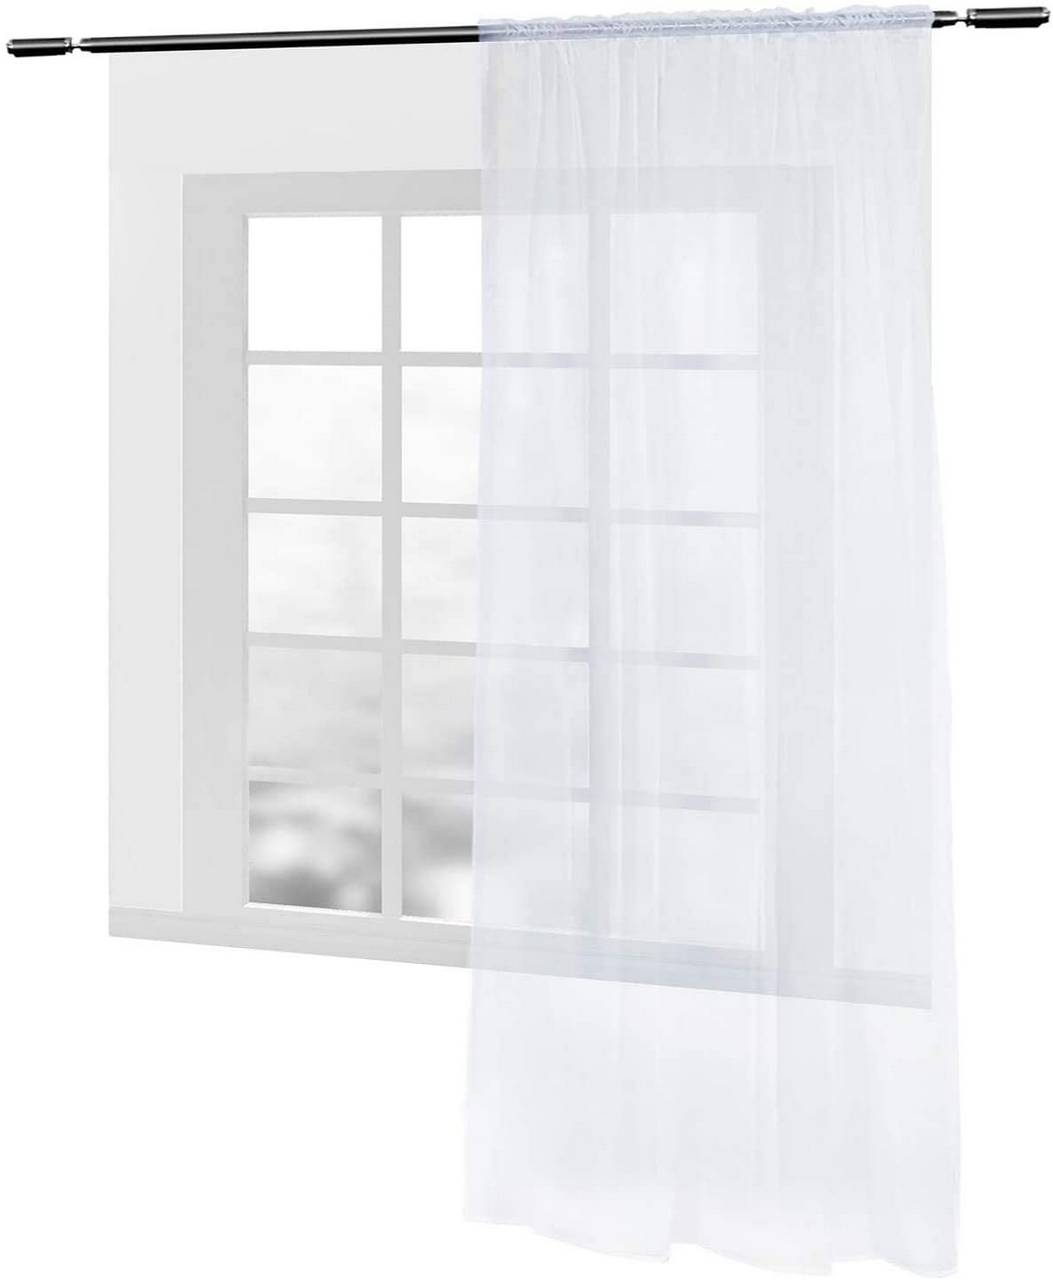 Gardinen Vorhang transparent mit Kräuselband Stores Wohnzimmer für Schiene Fensterschal Schlafzimmer Voile